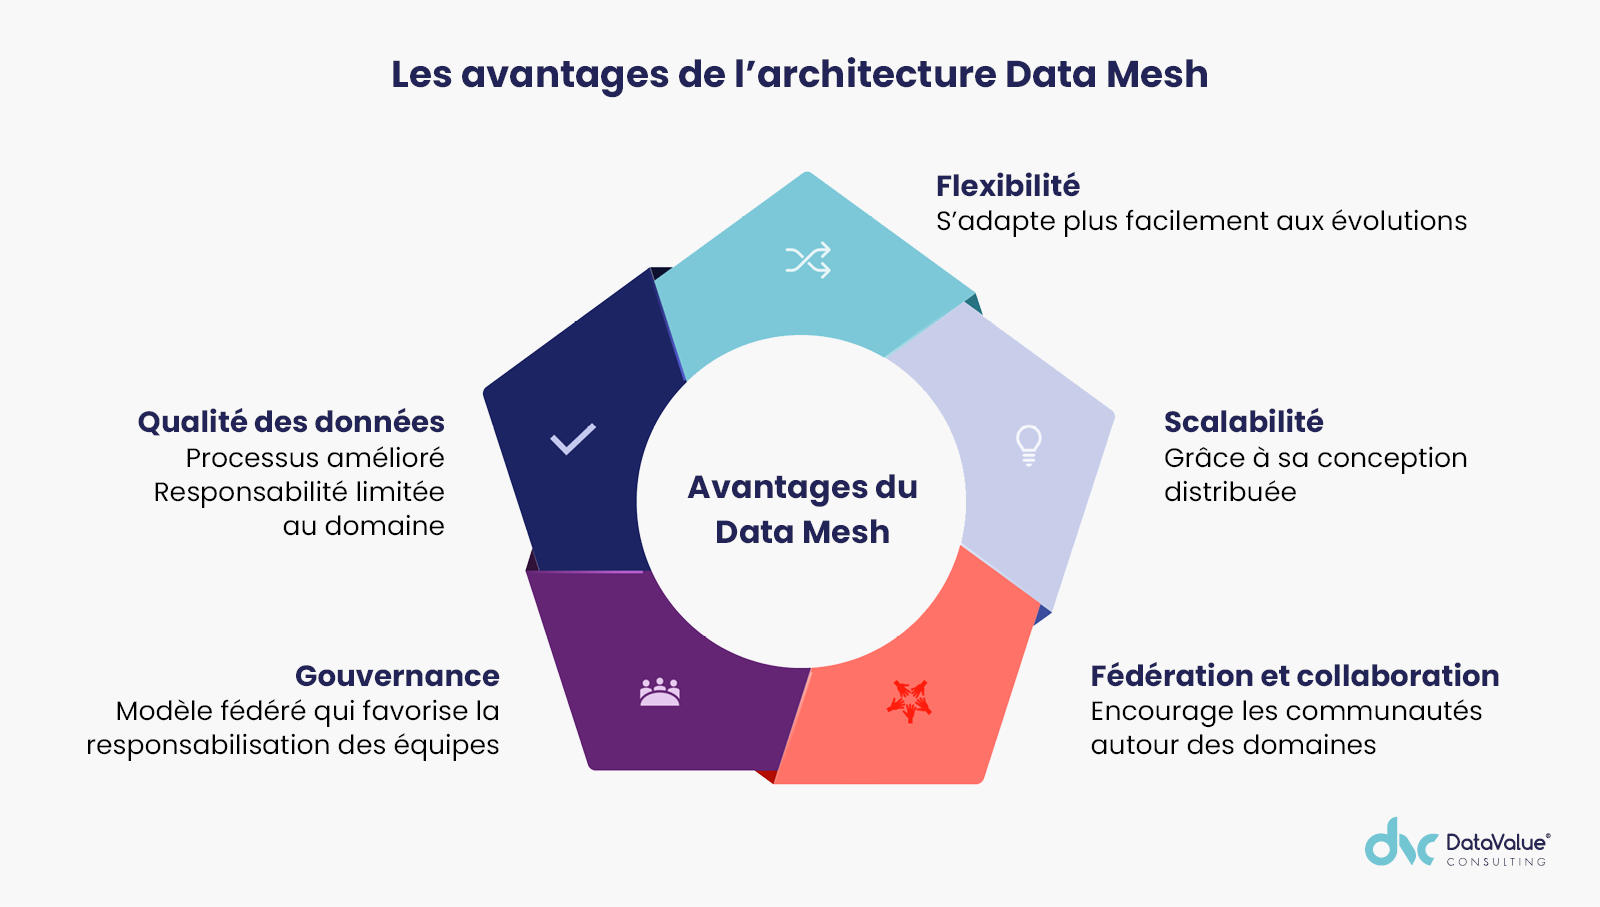 Les avantages de l'architecture Data Mesh